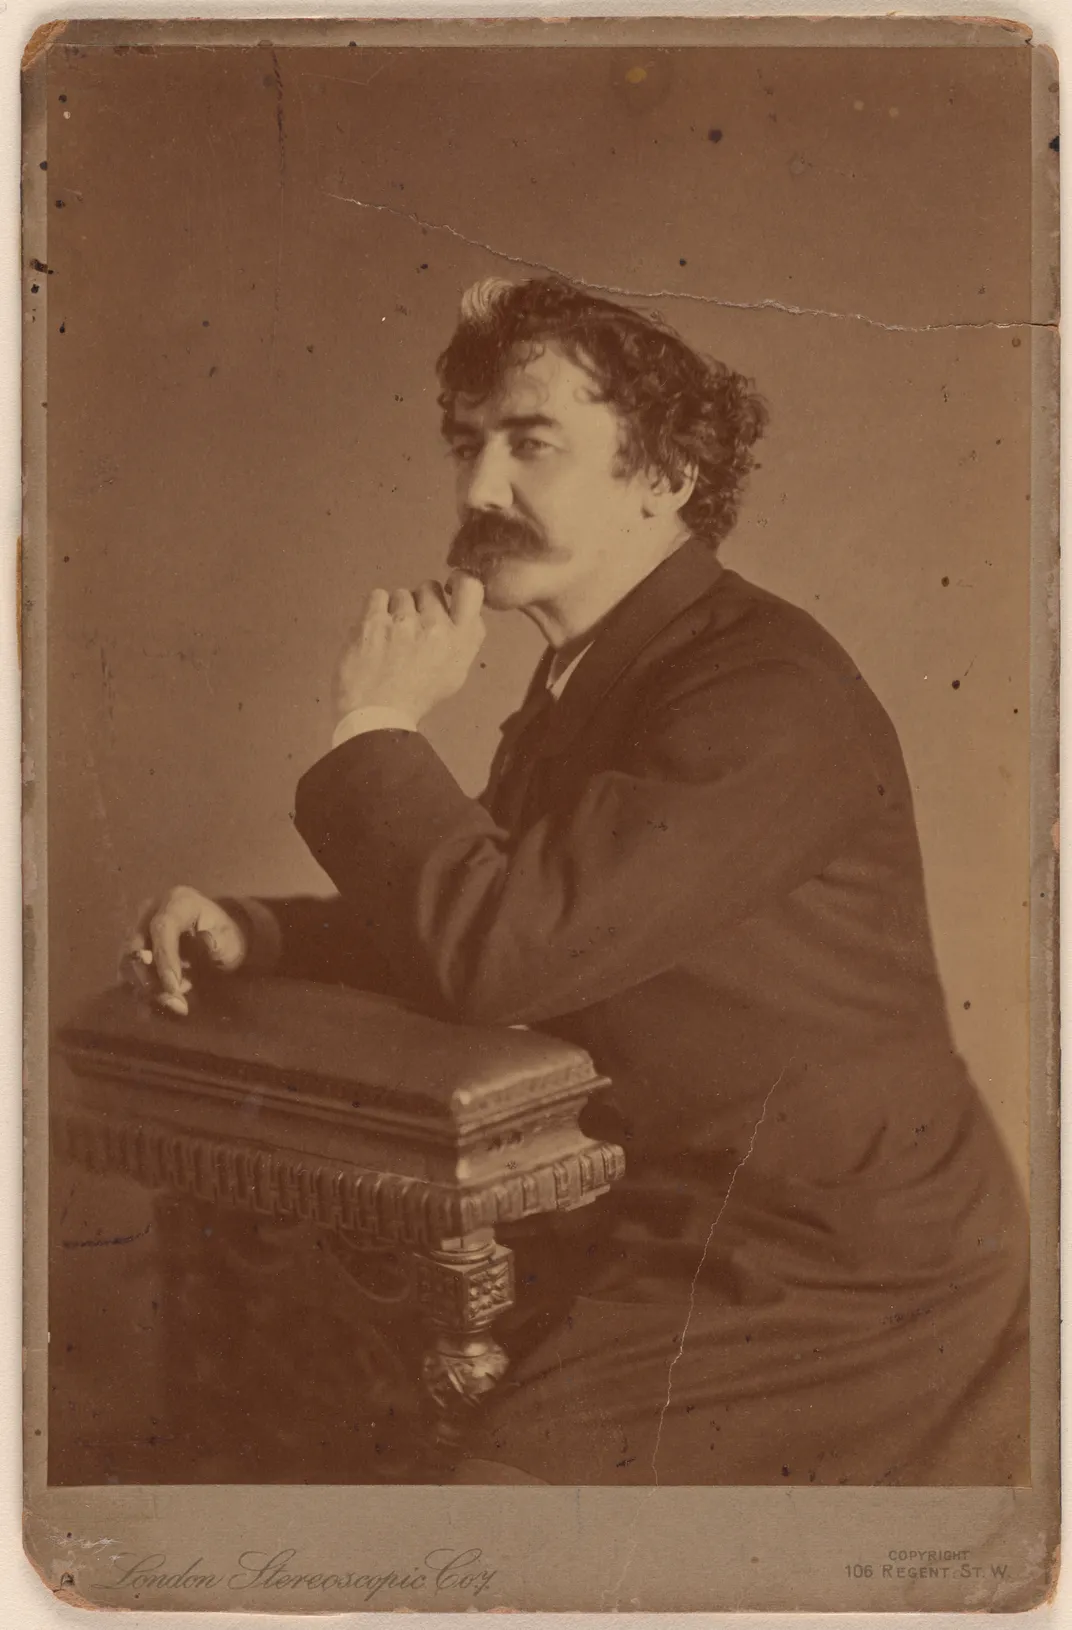 James Abbott McNeill Whistler, c. 1870